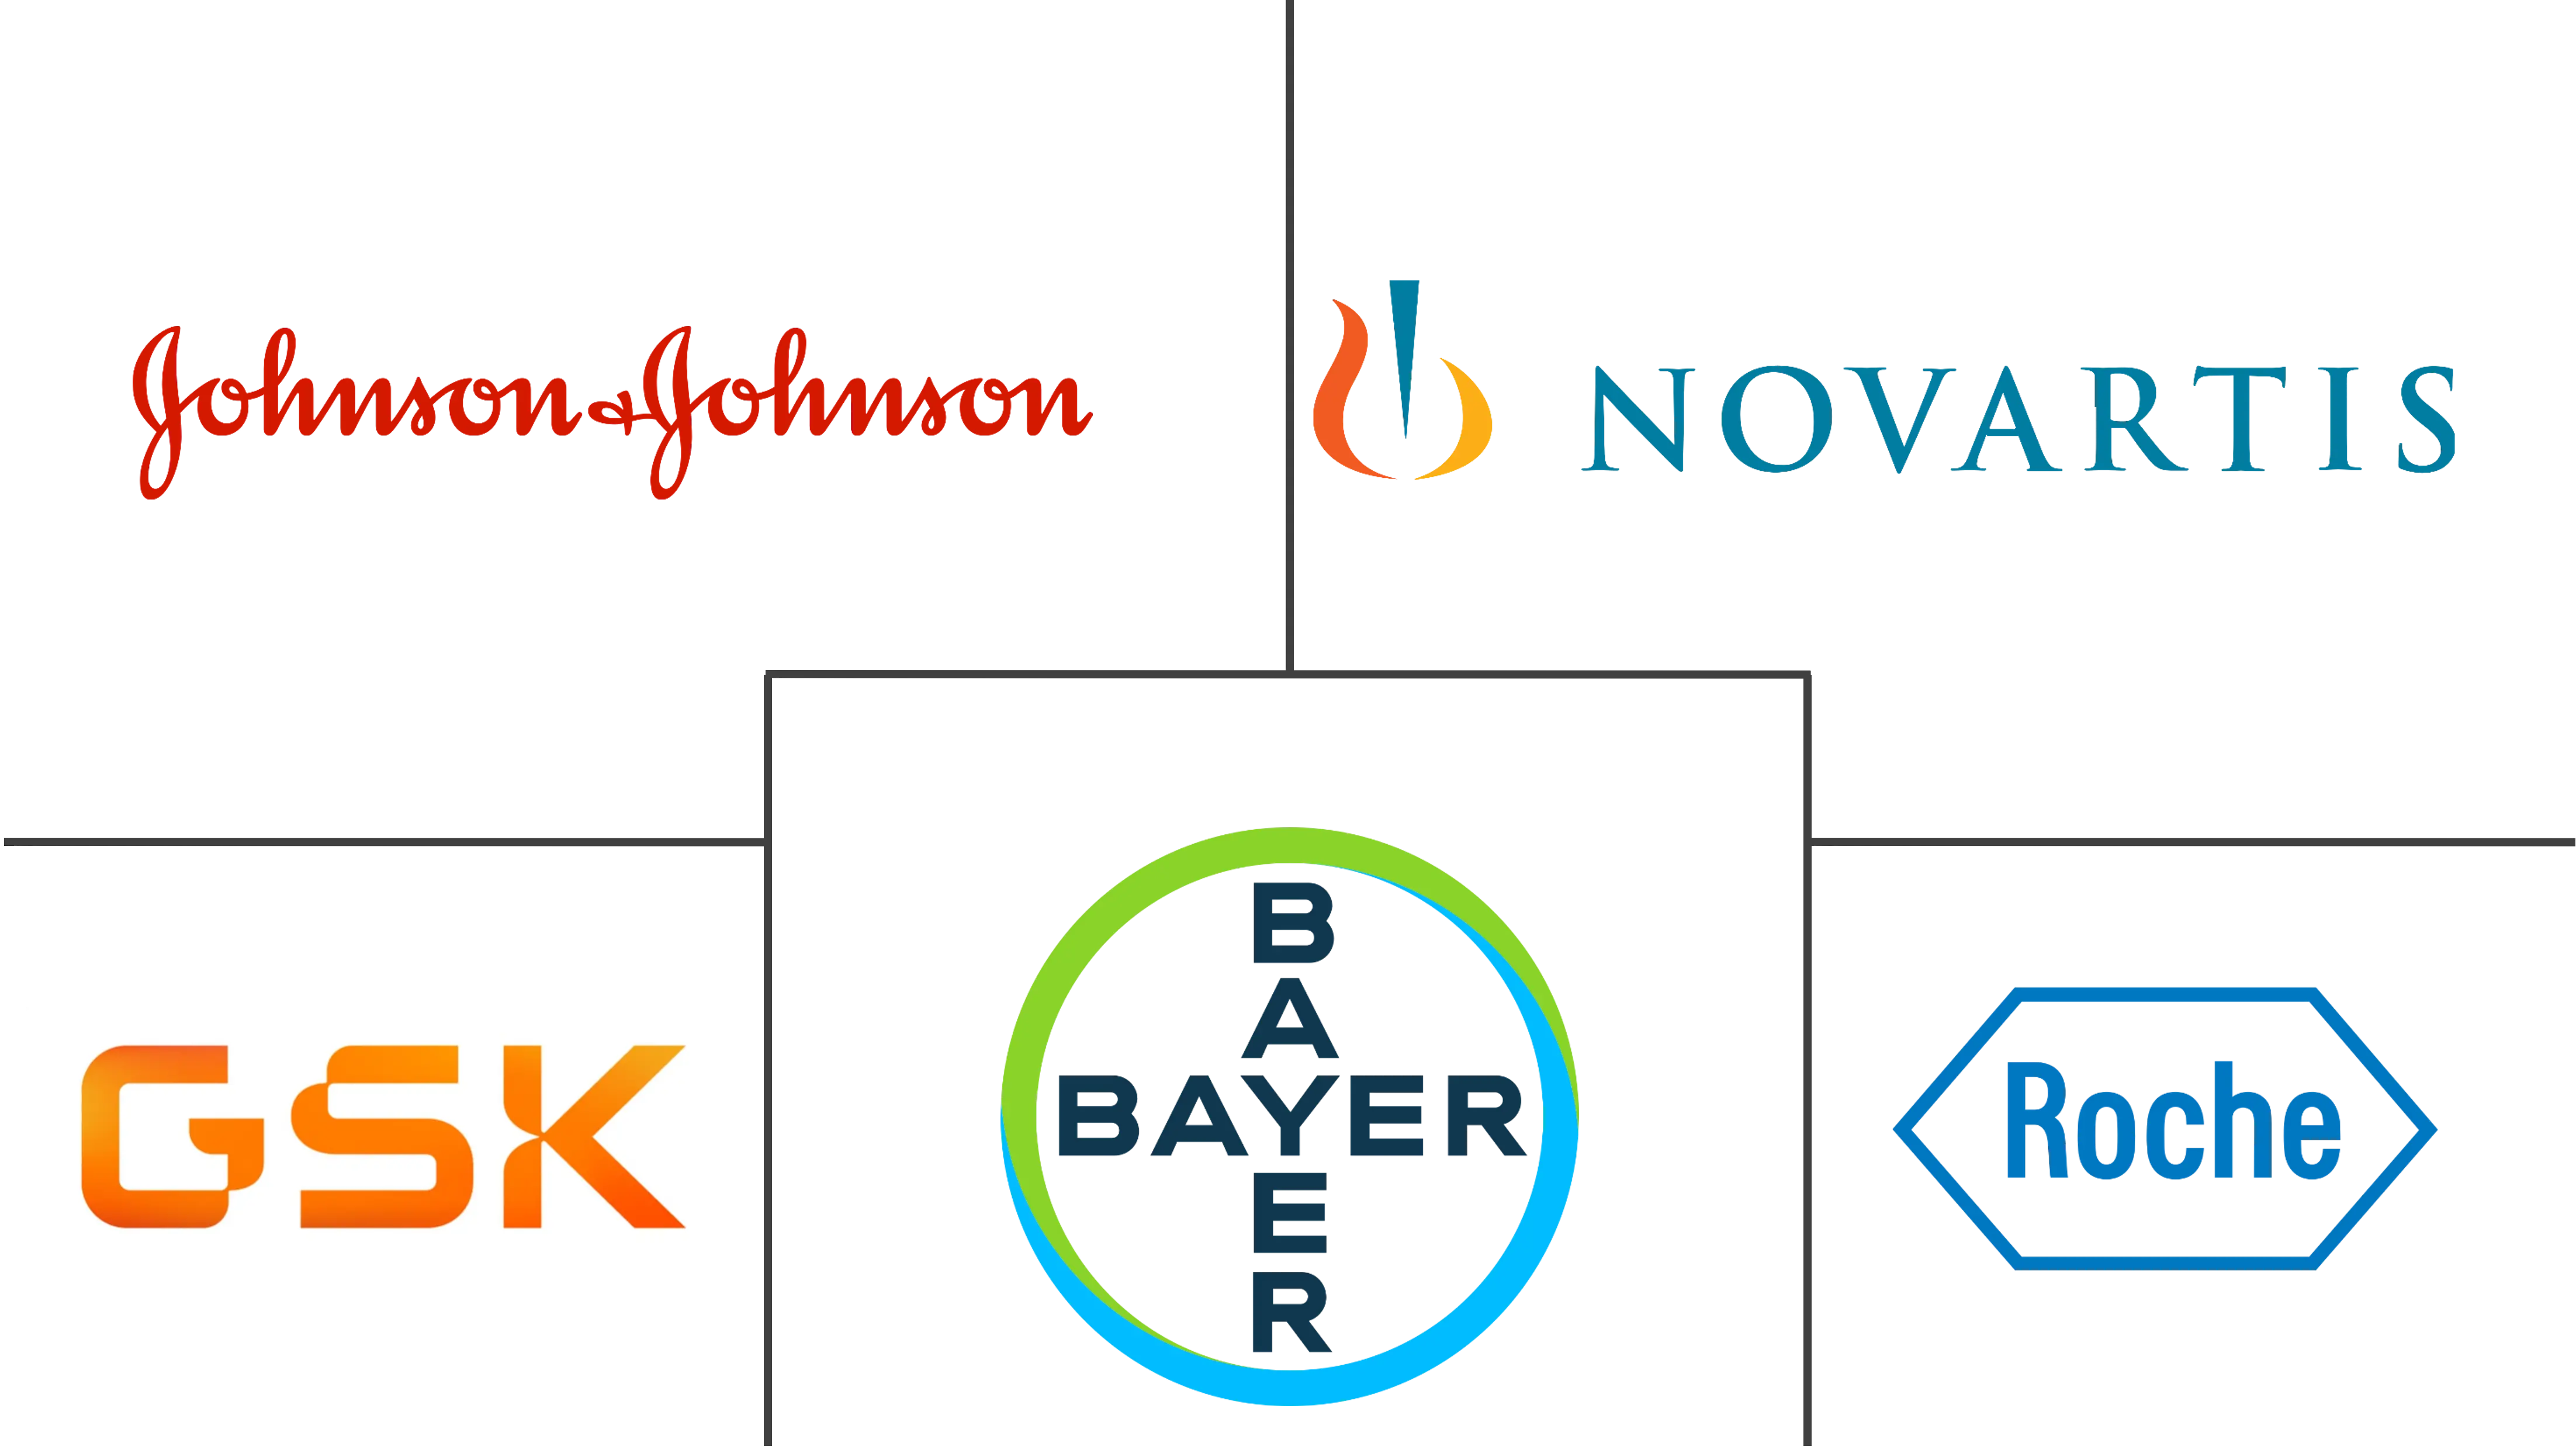 Principales actores del mercado de dispositivos de administración de medicamentos de Estados Unidos